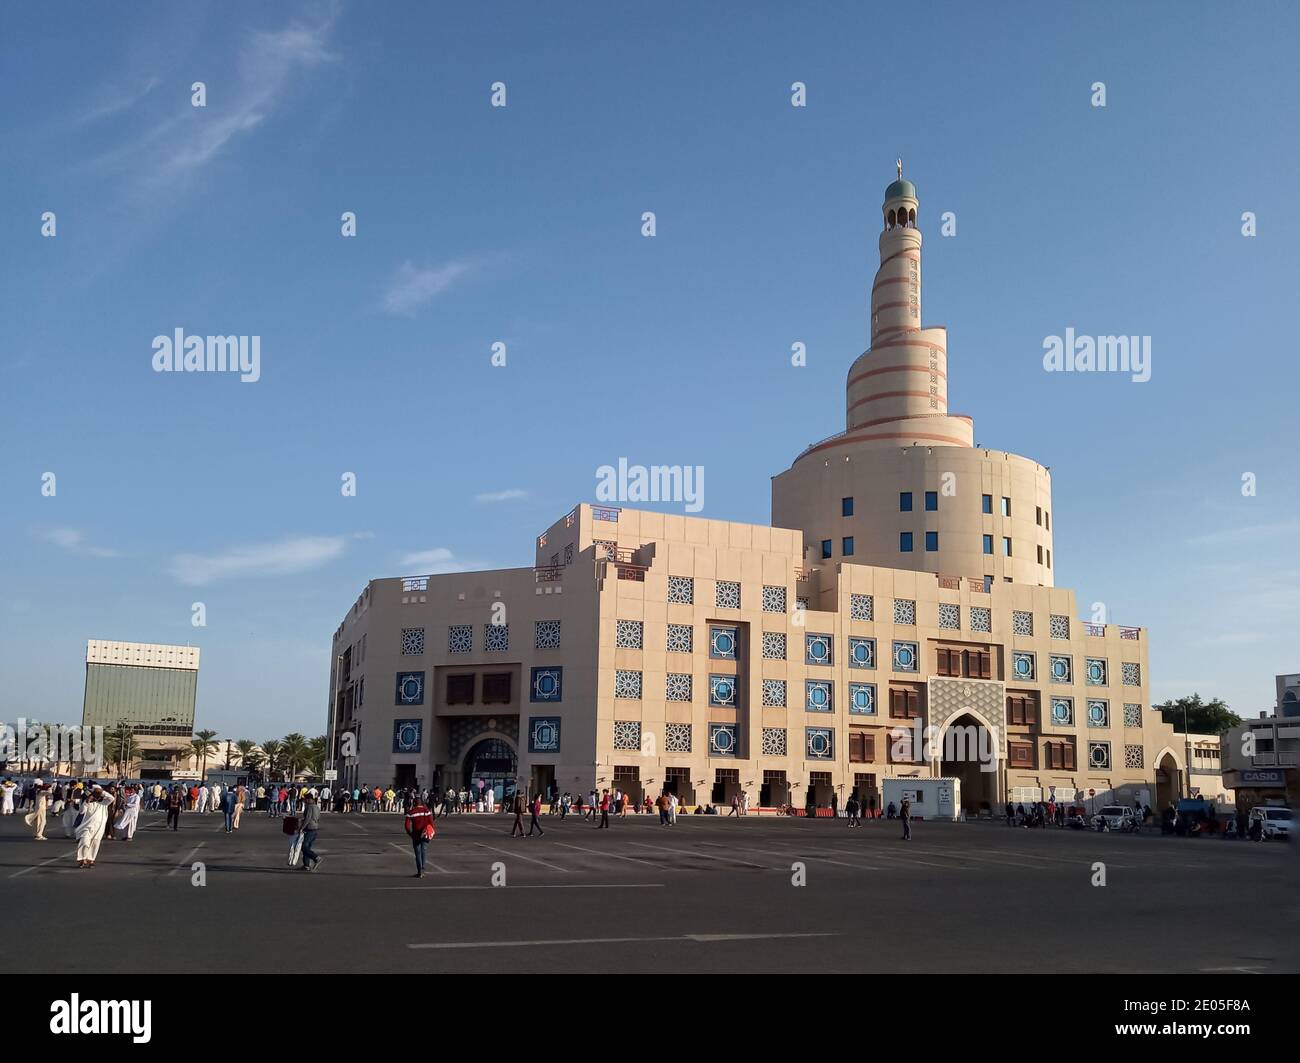 Vue sur Fanar, c'est l'une des destinations touristiques les plus importantes au Qatar Banque D'Images